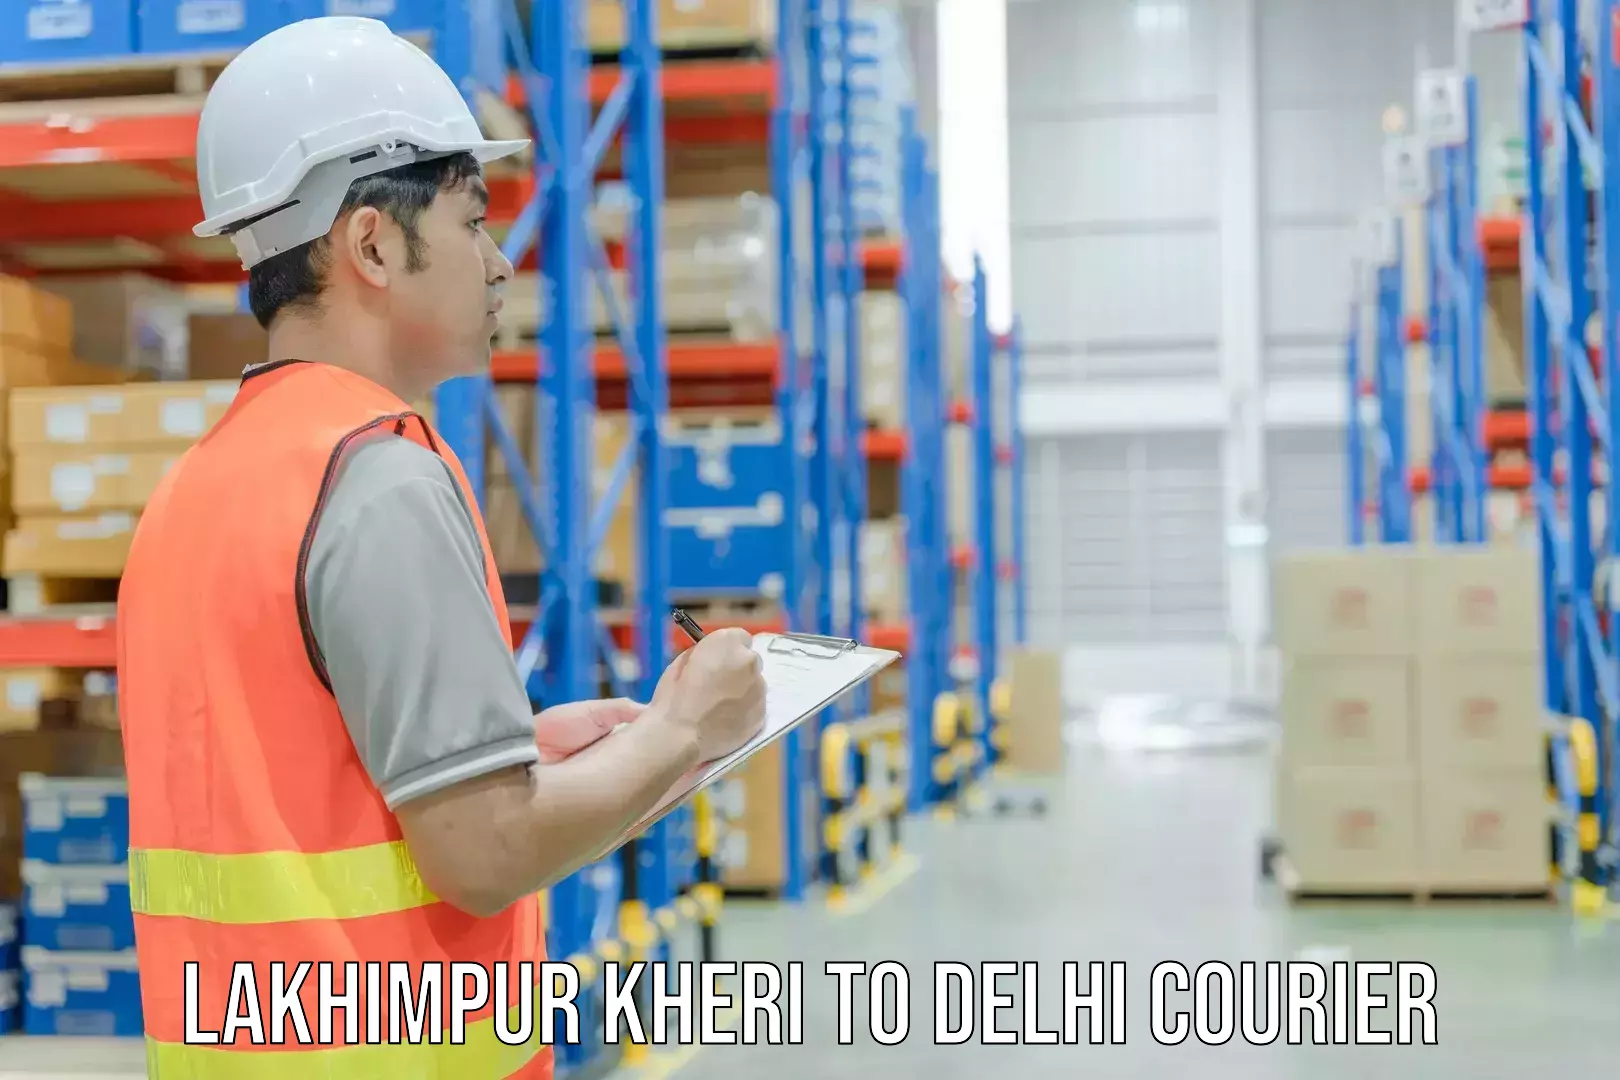 User-friendly courier app Lakhimpur Kheri to University of Delhi